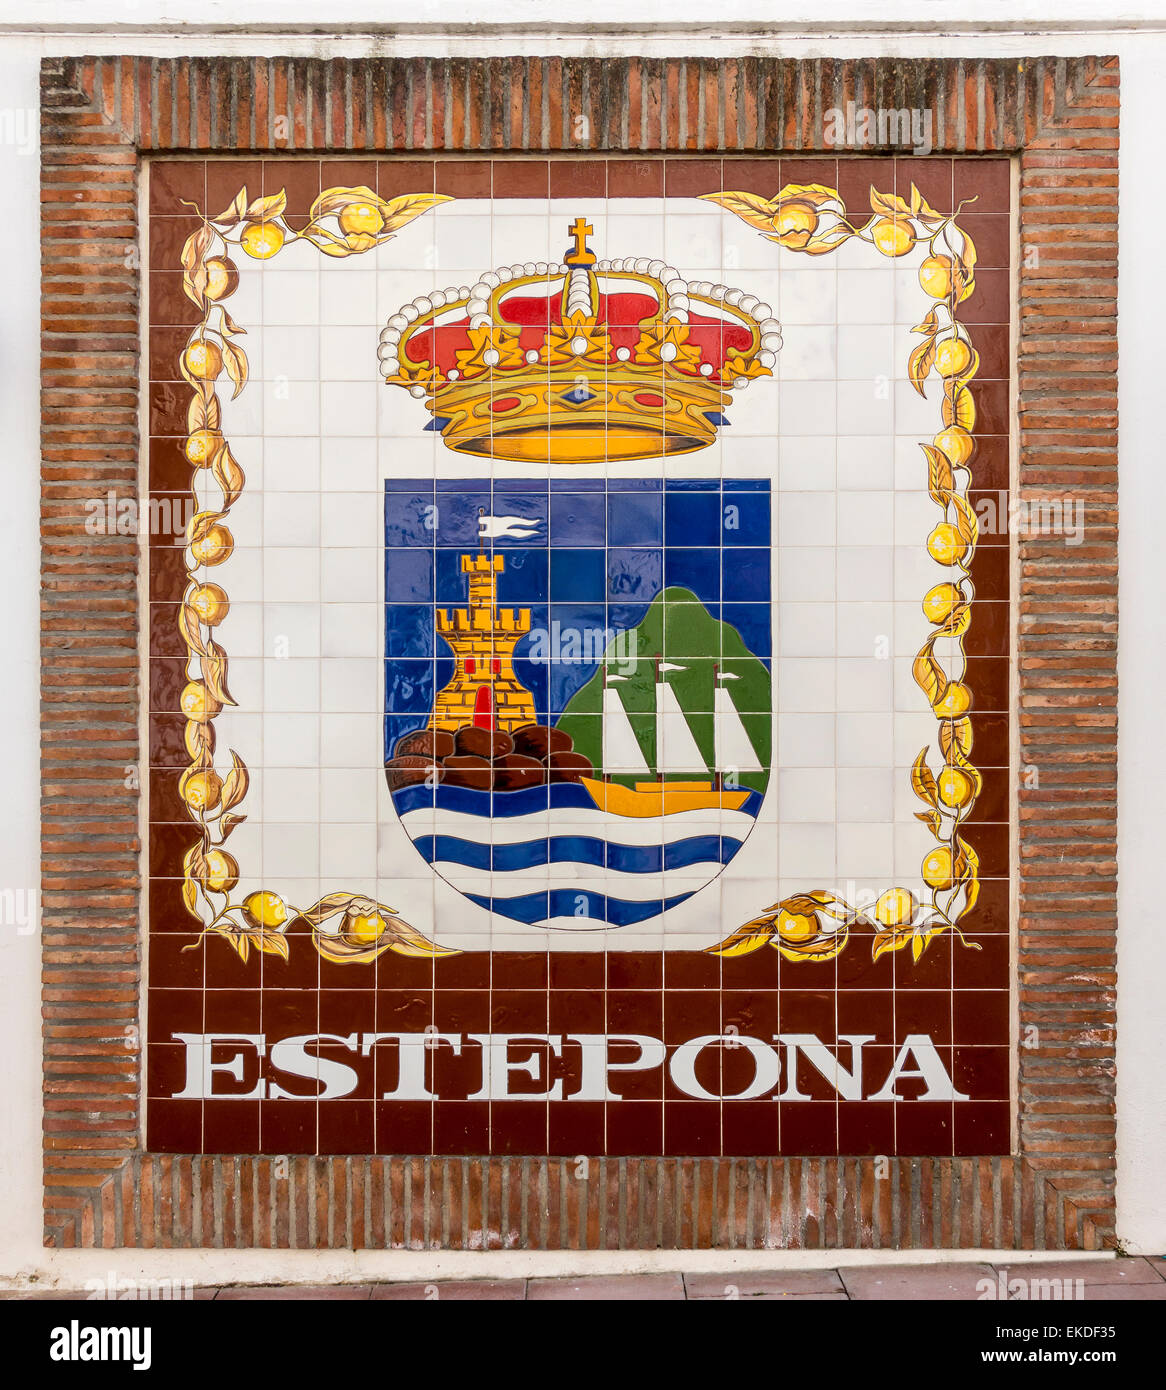 Estepona Spagna Città emblema in piastrelle Foto Stock